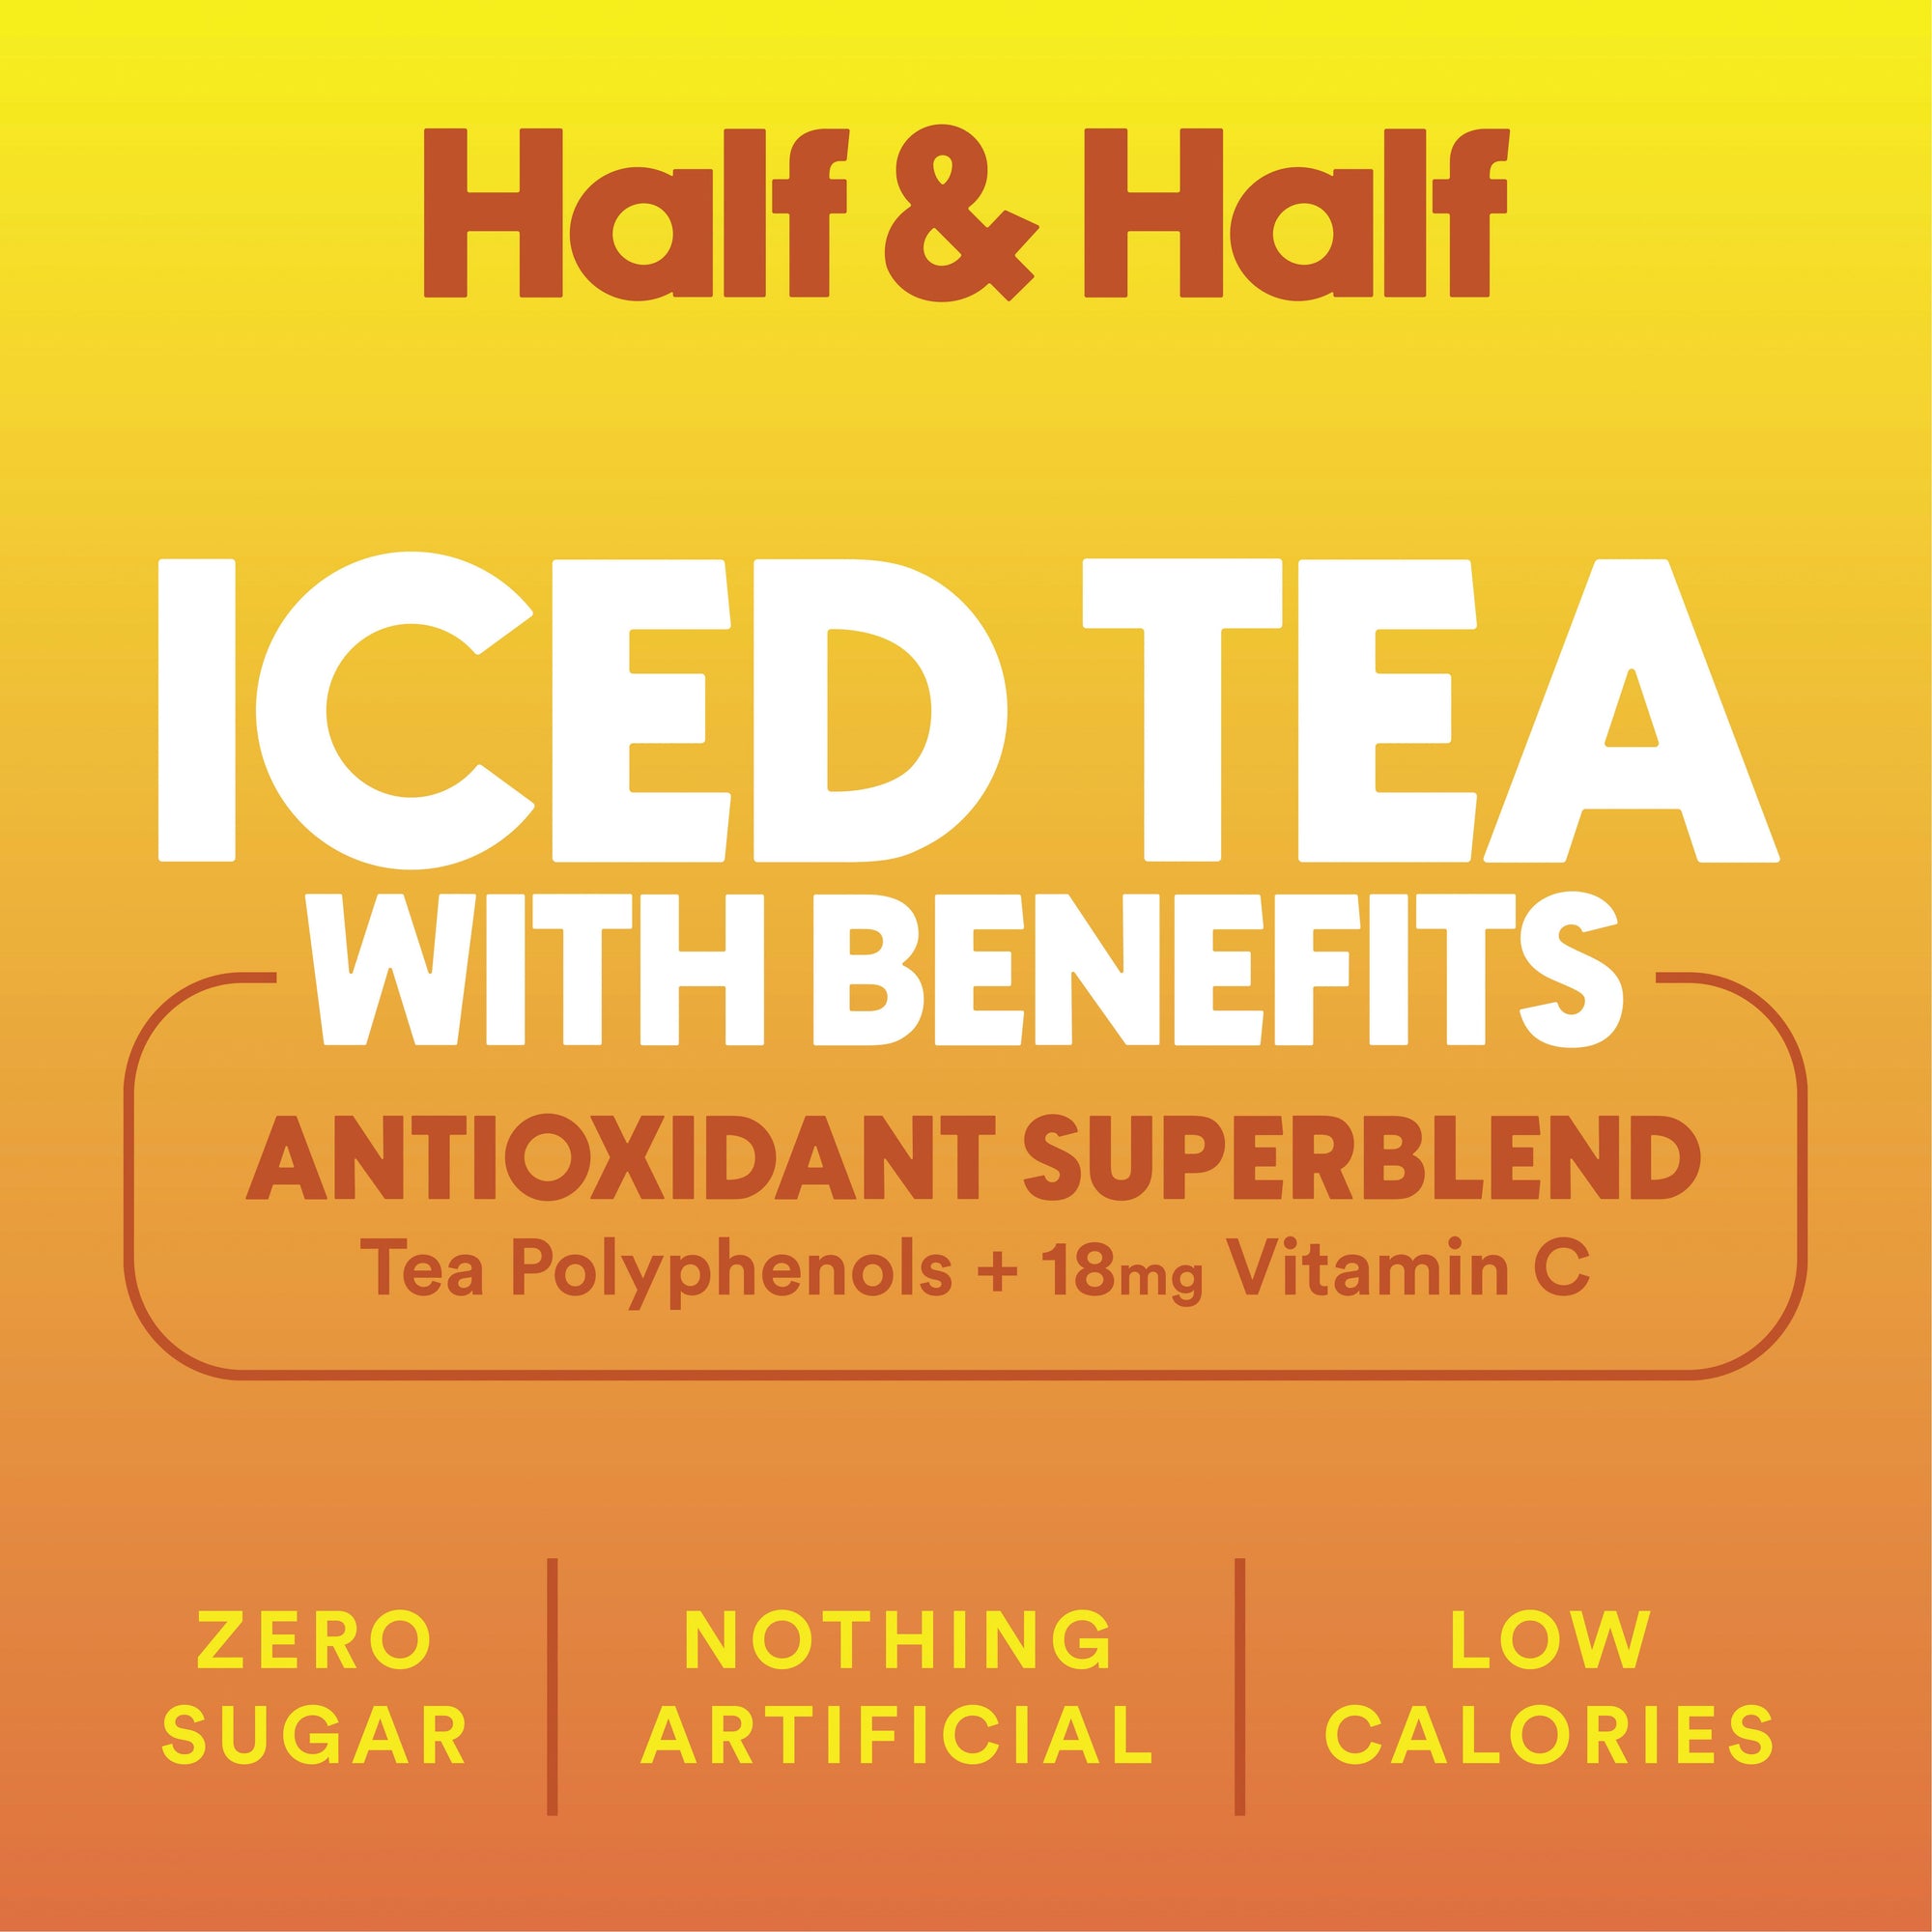 Half Iced Tea & Half Lemonade 4 Pack